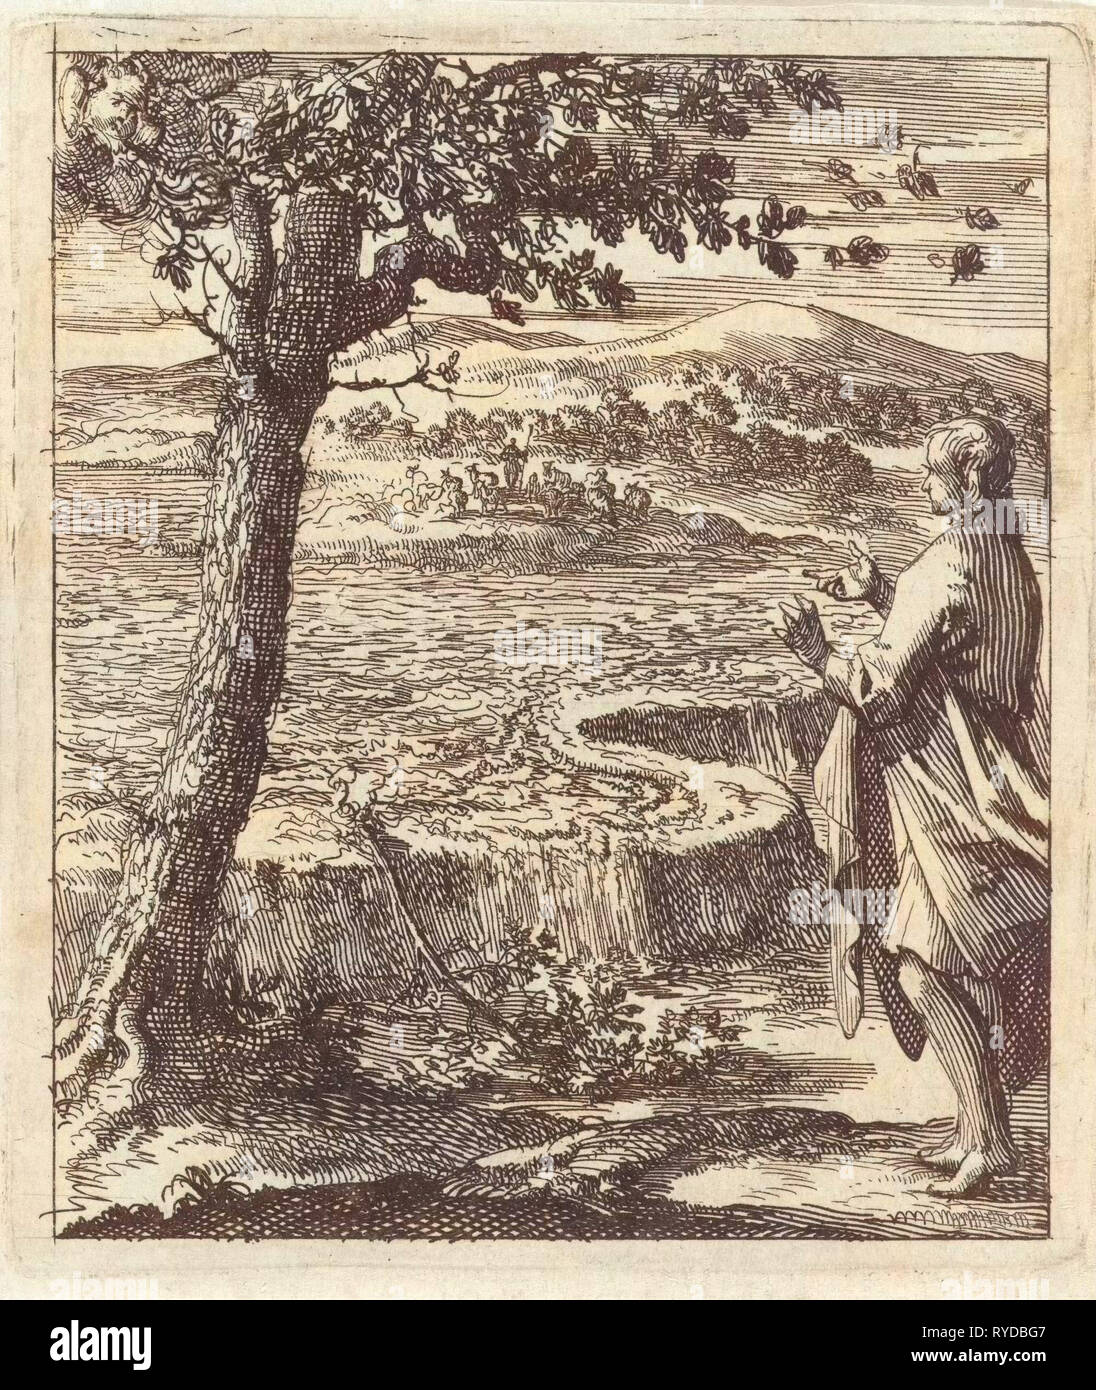 Un homme est témoin d'une rupture de digues, Jan Luyken, mer. Pieter Arentsz (II), 1689 Banque D'Images